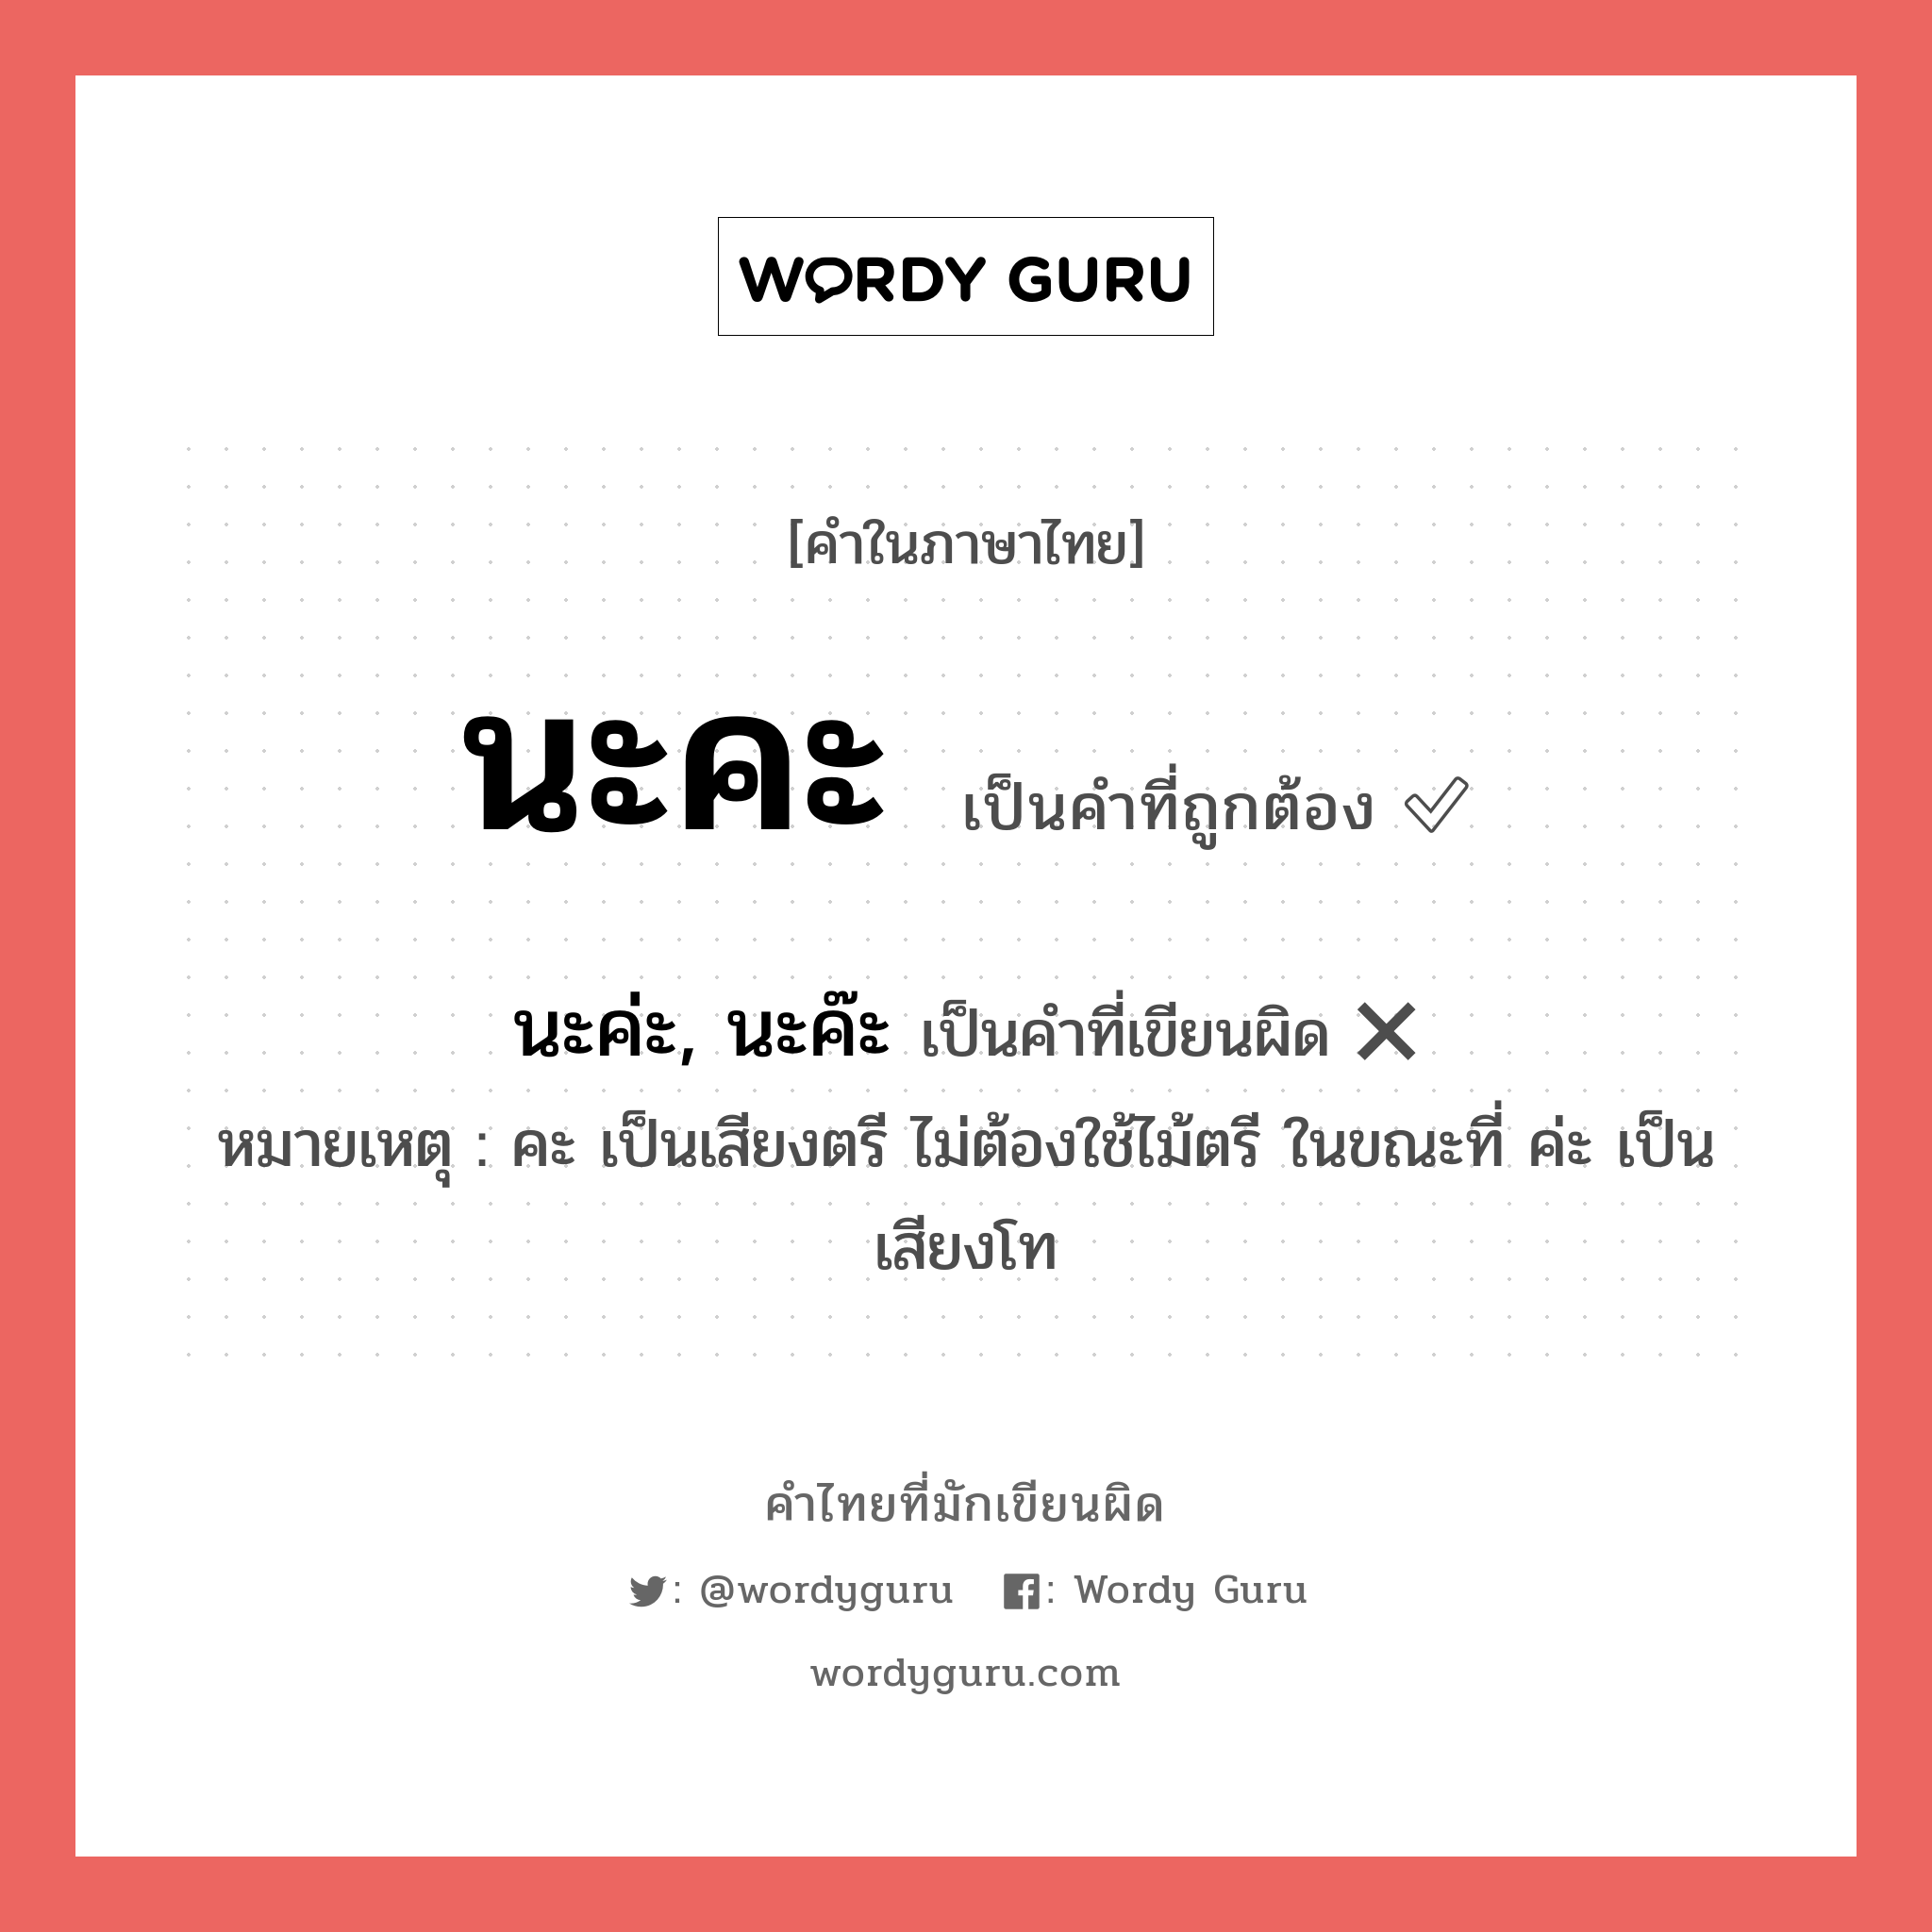 นะคะ หรือ นะค่ะ, นะค๊ะ คำไหนเขียนถูก?, คำในภาษาไทยที่มักเขียนผิด นะคะ คำที่ผิด ❌ นะค่ะ, นะค๊ะ หมายเหตุ คะ เป็นเสียงตรี ไม่ต้องใช้ไม้ตรี ในขณะที่ ค่ะ เป็นเสียงโท